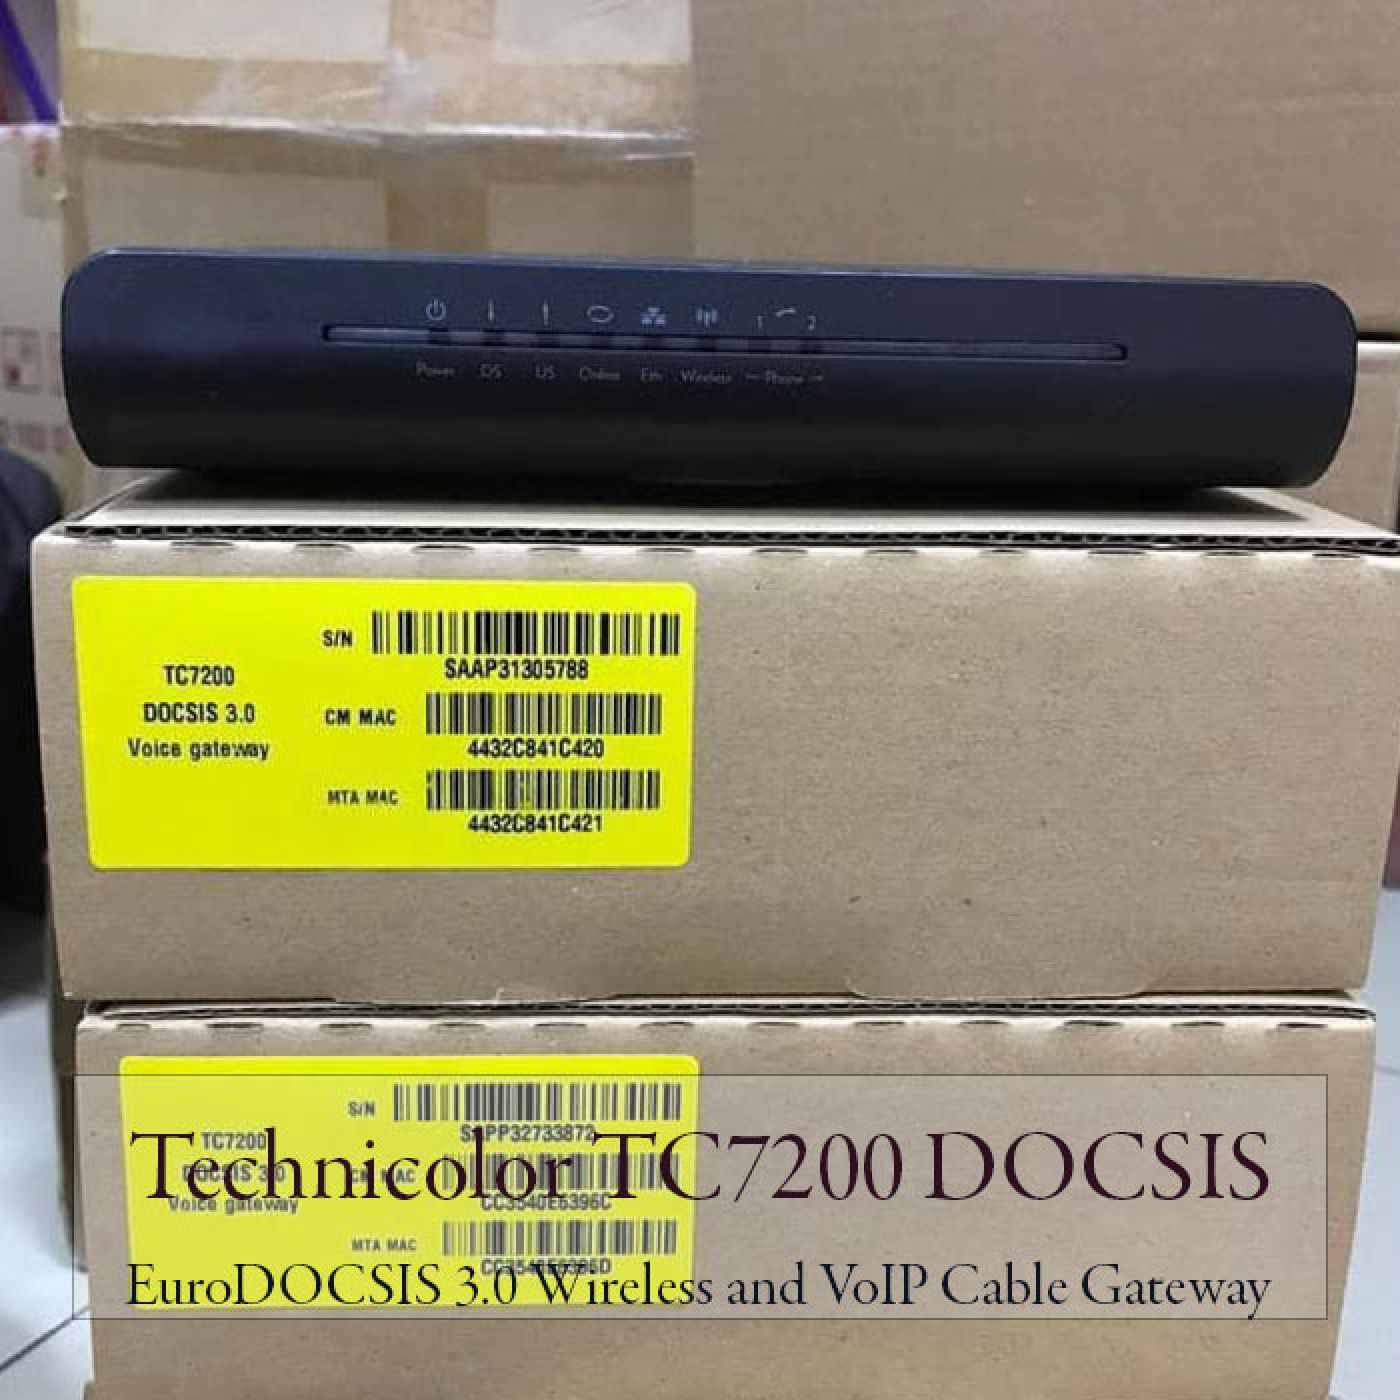 Modem wifi Technicolor TC7200 - Bộ phát wifi không dây dung lượng lớn, băng thông cao.